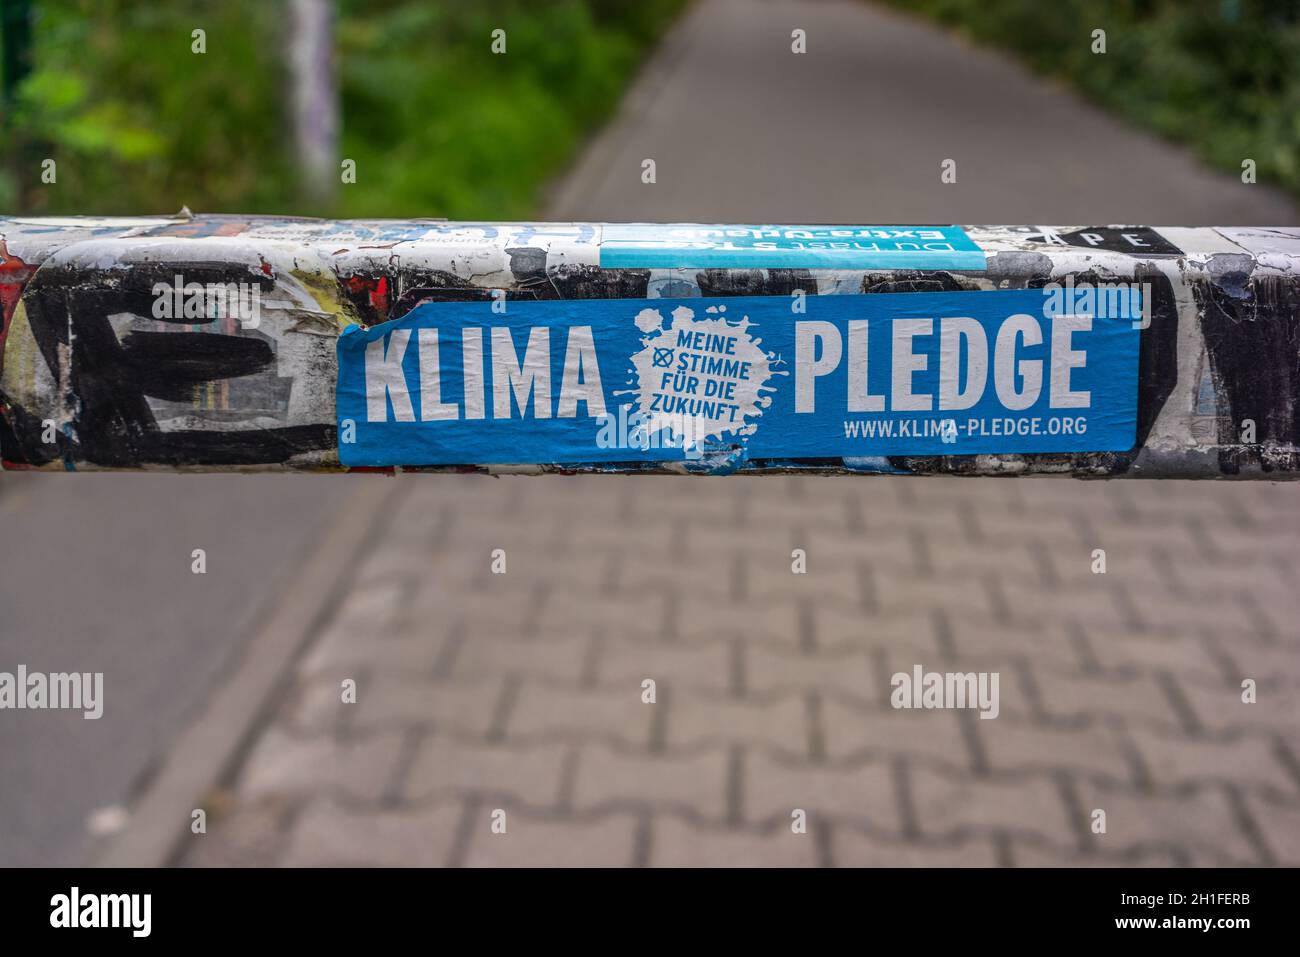 Klima gage - autocollant de campagne de promesse climatique, Berlin, Allemagne, Europe Banque D'Images